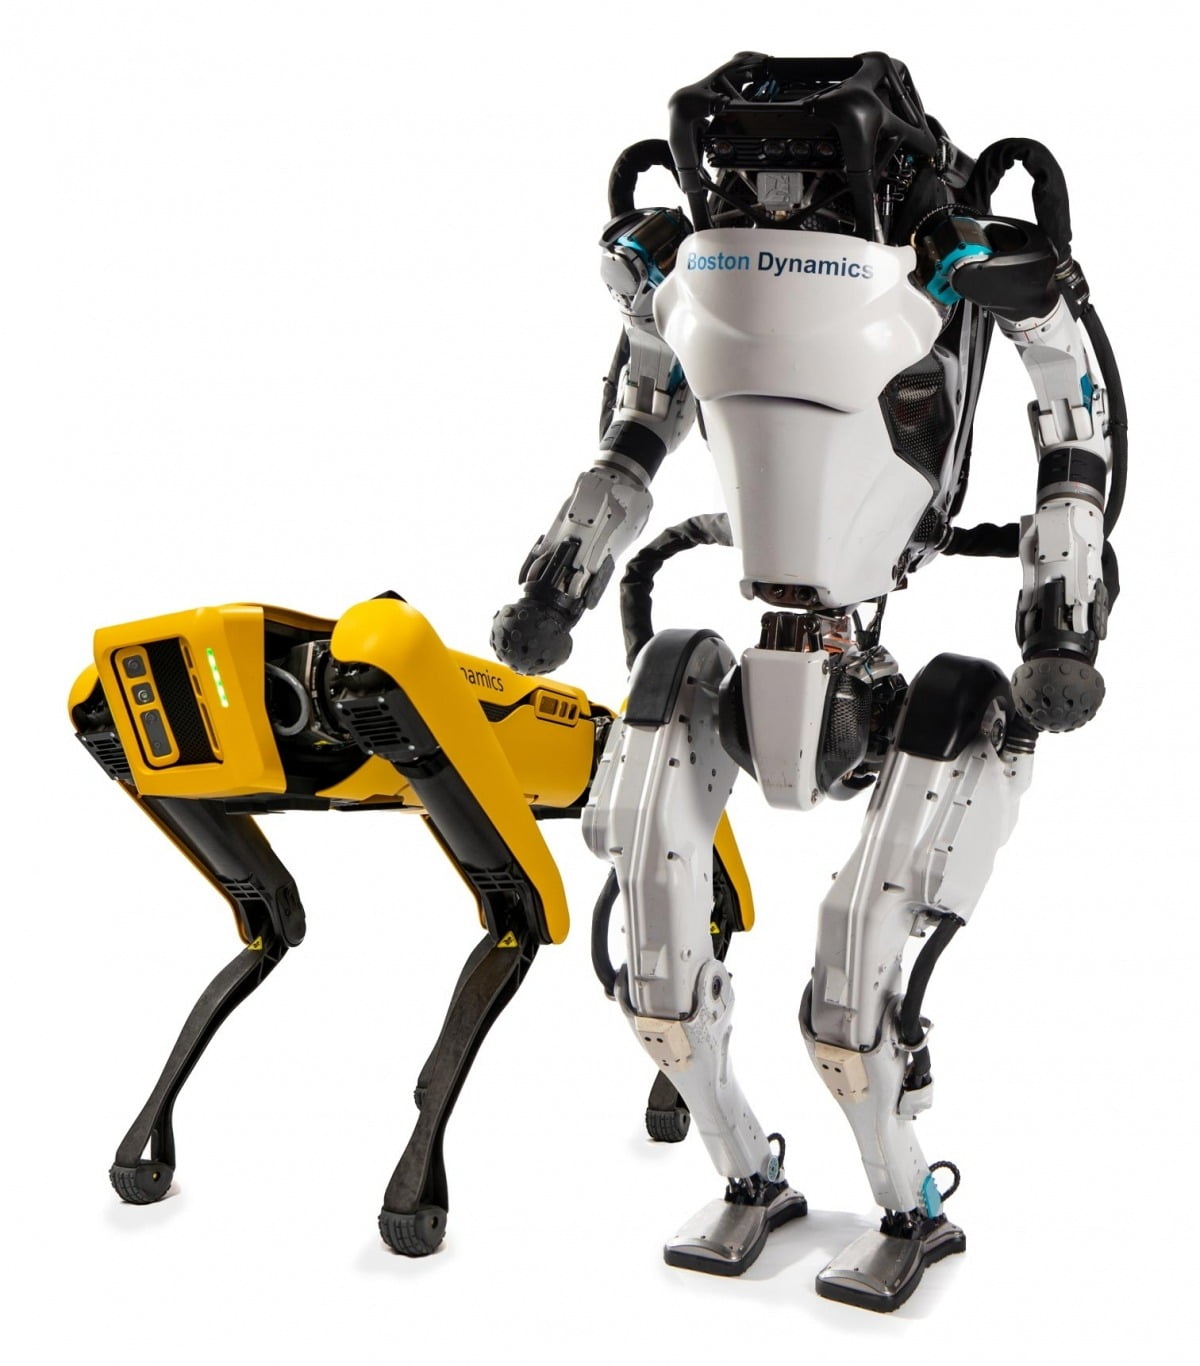 보스턴다이내믹스가 개발한 사족보행 로봇 개 ‘스팟’과 휴머노이드 로봇 ‘아틀라스’.